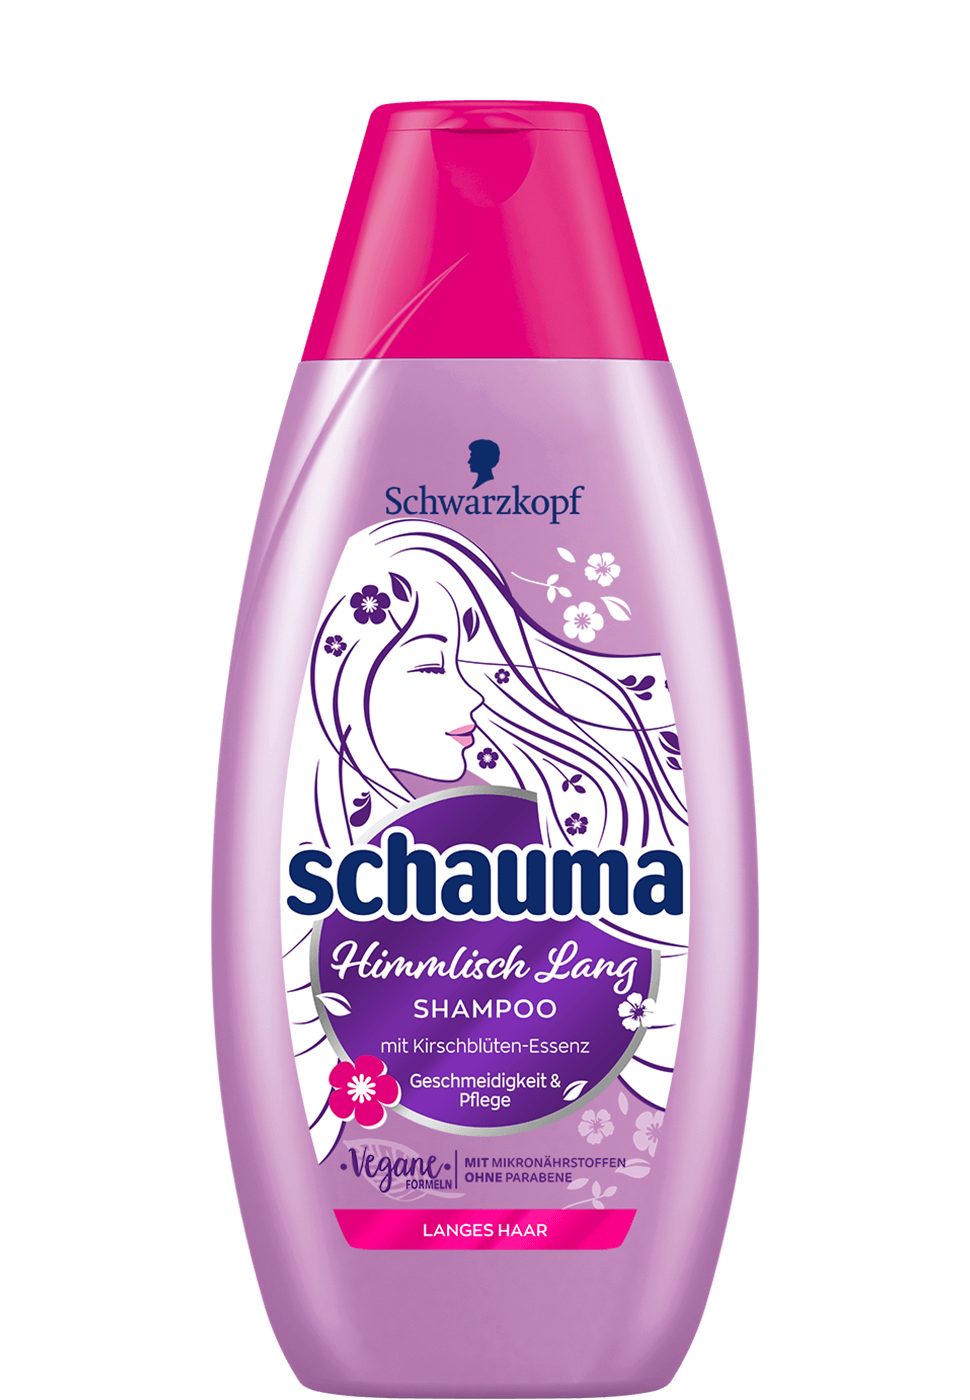 Der Schwarzkopf Shampoo Guide